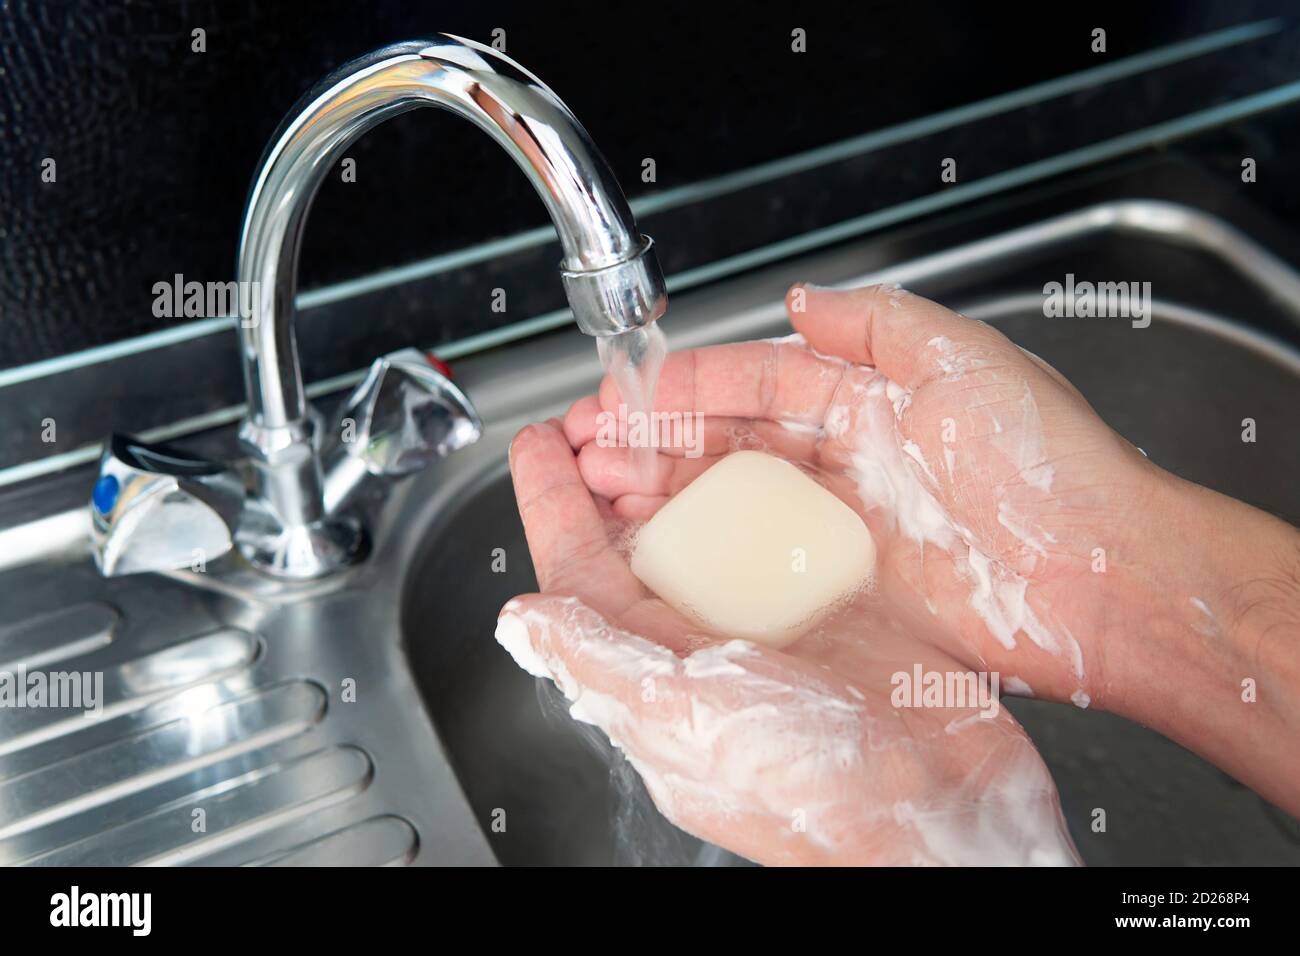 Моет глаза. Человек моет руки под краном. Мытье тела под краном. Моет руки мылом над металлической мойкой.